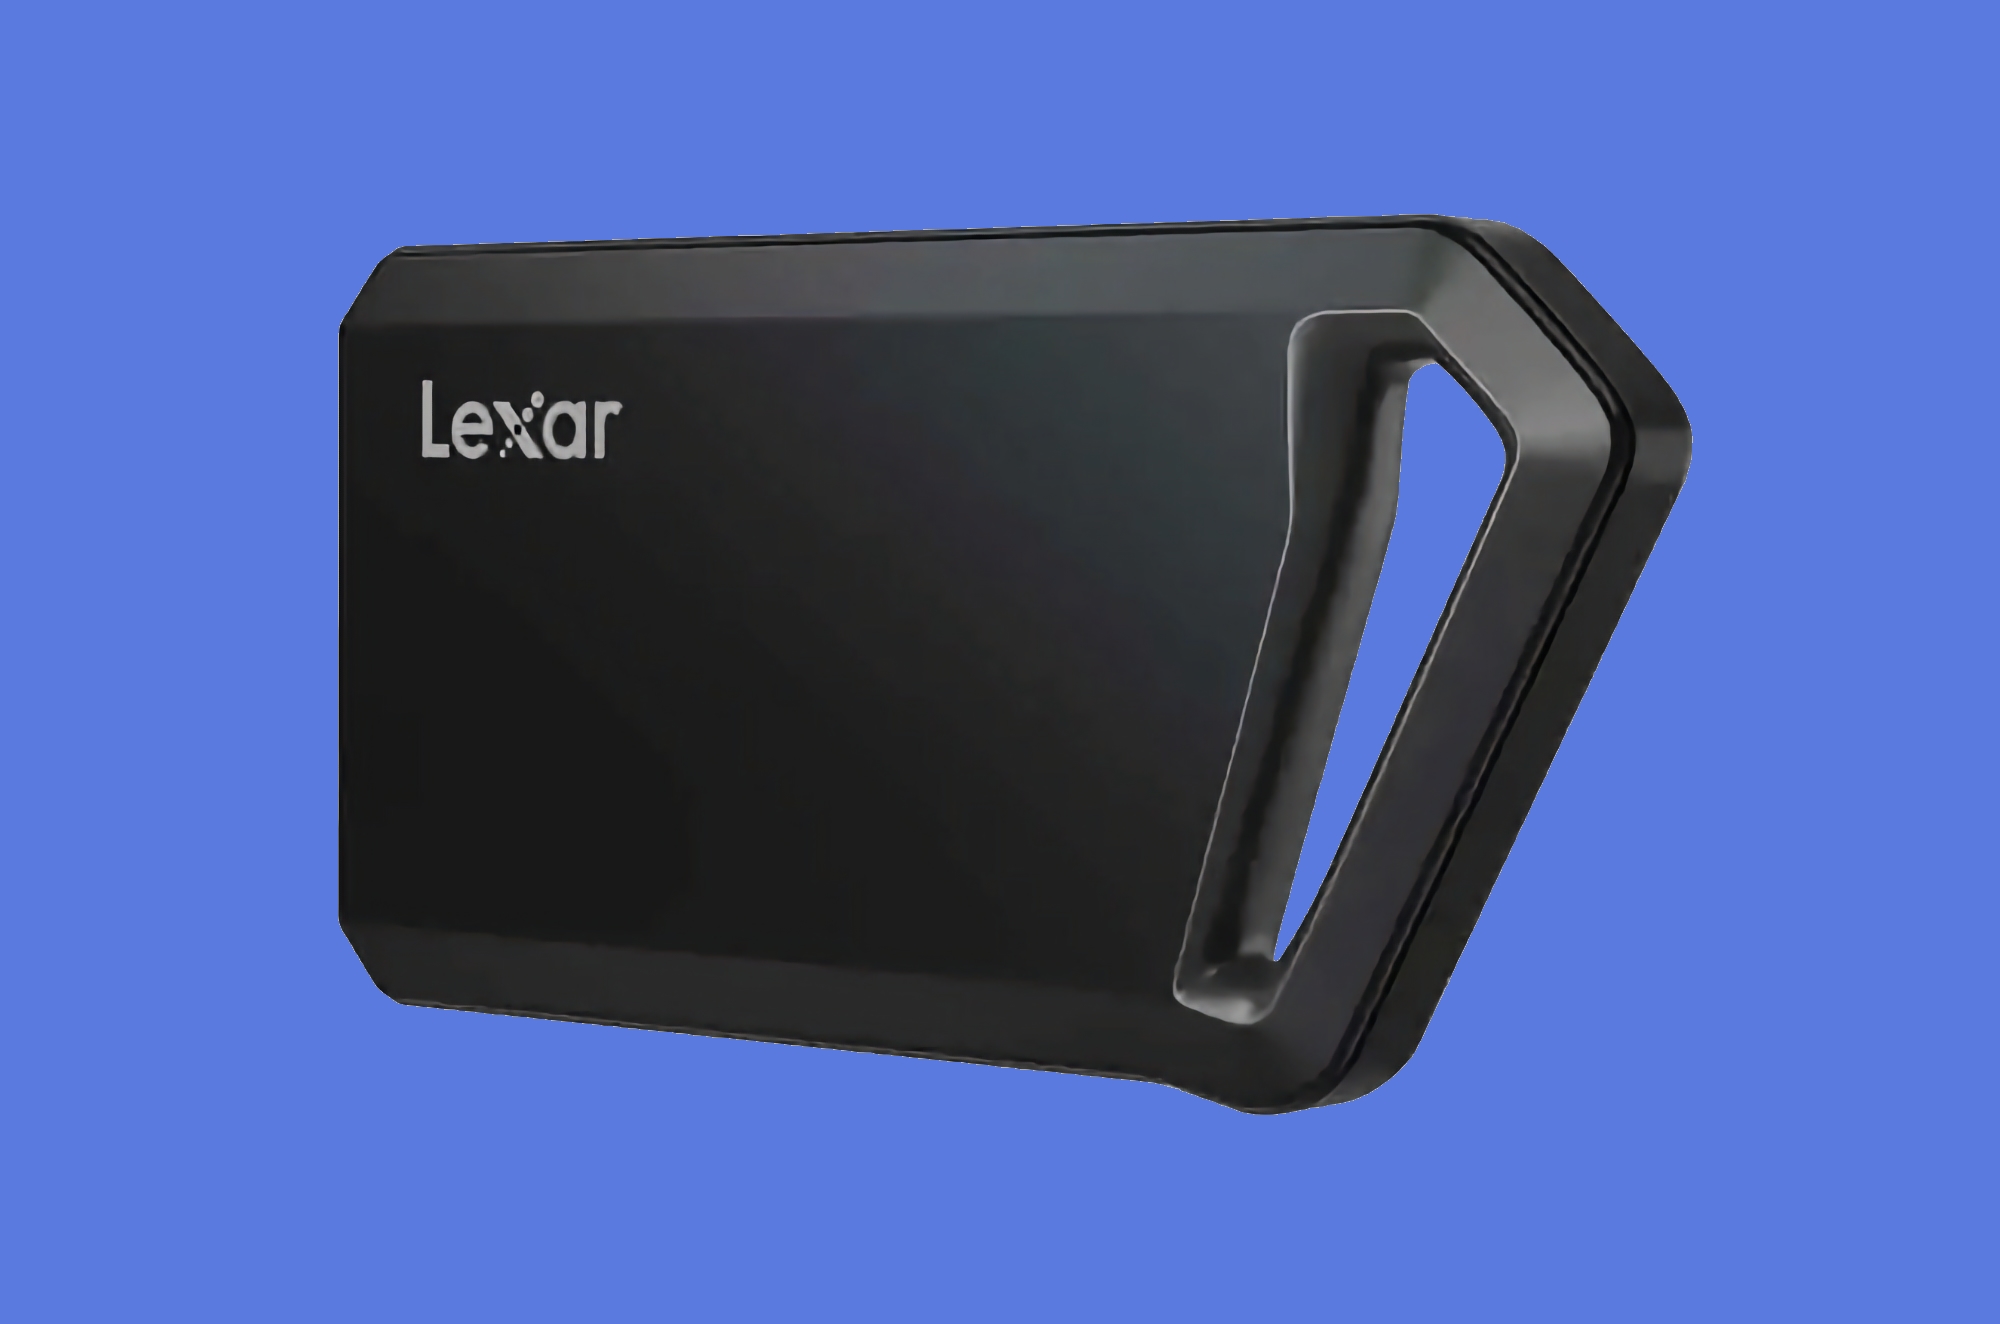 Lexar hat die Professional SL600 Portable SSD mit stoßfestem Gehäuse, 1-4TB Kapazität und Preisen ab $89 vorgestellt